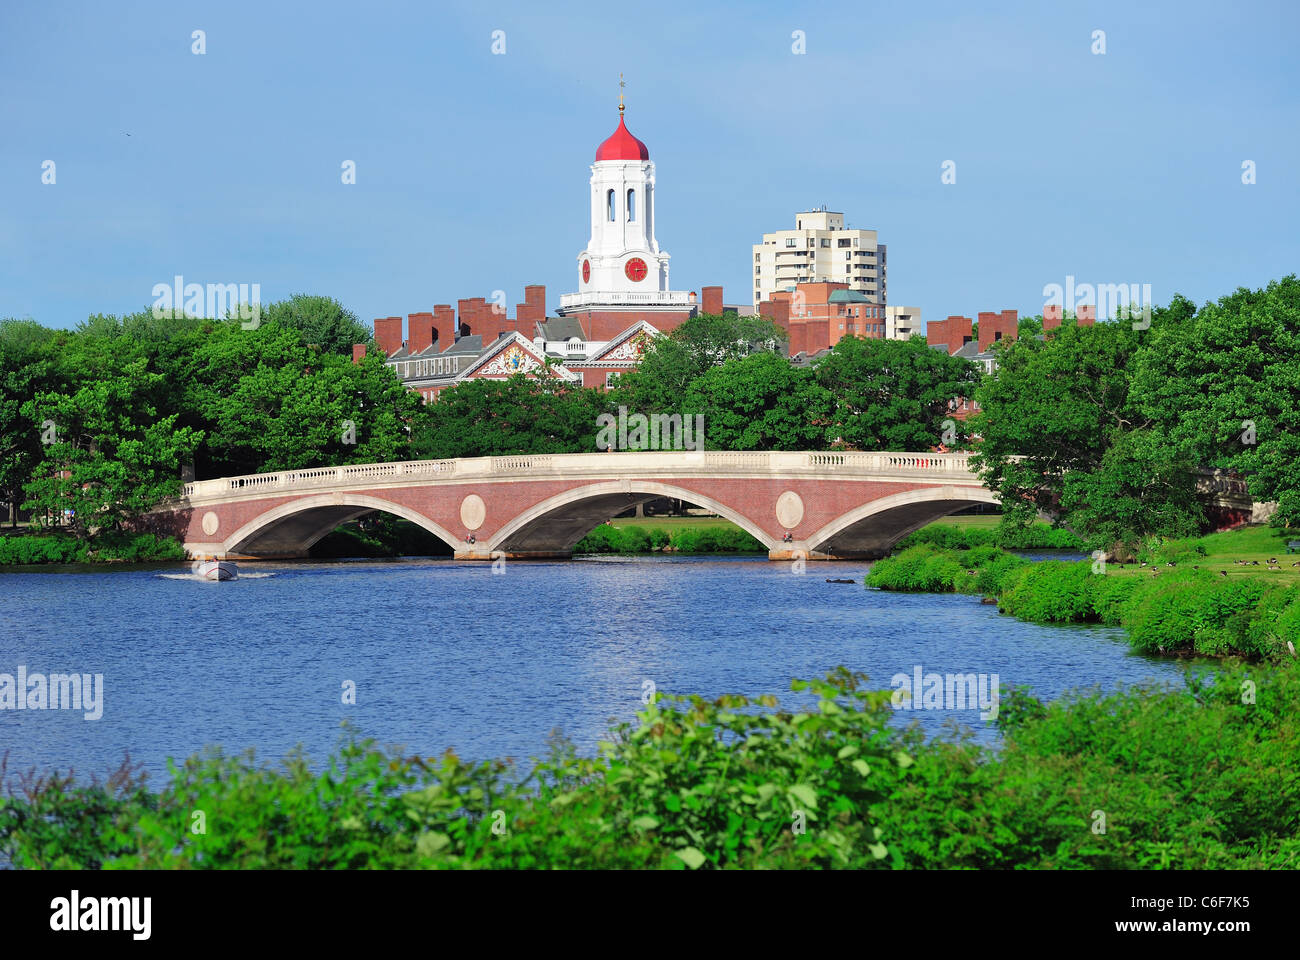 John W. Semaines Bridge et la tour de l'horloge sur Charles River dans l'Université de Harvard à Boston campus d'arbres et de ciel bleu. Banque D'Images